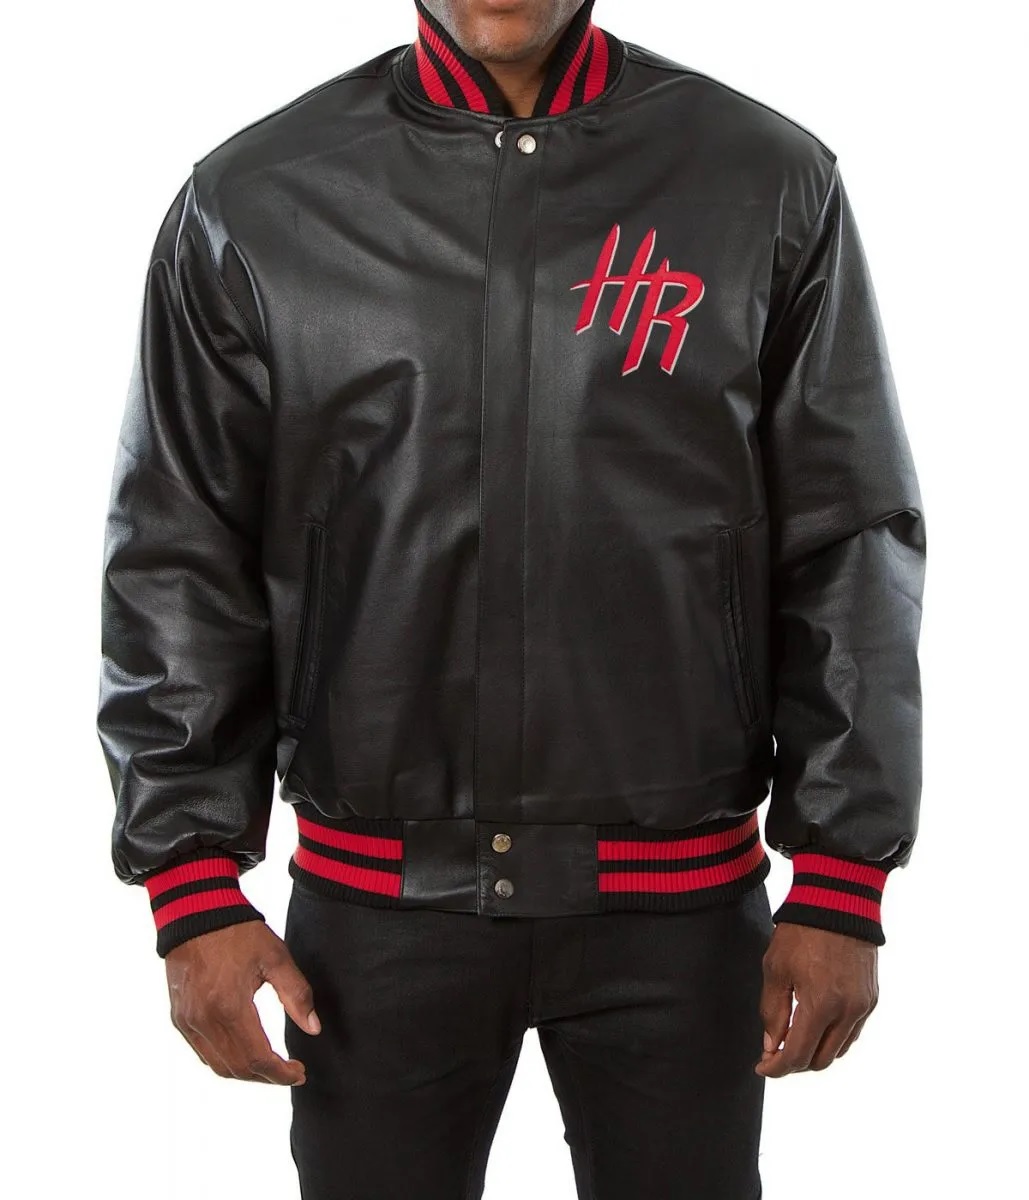 Varsity Houston Rockets Black Leather Jacket